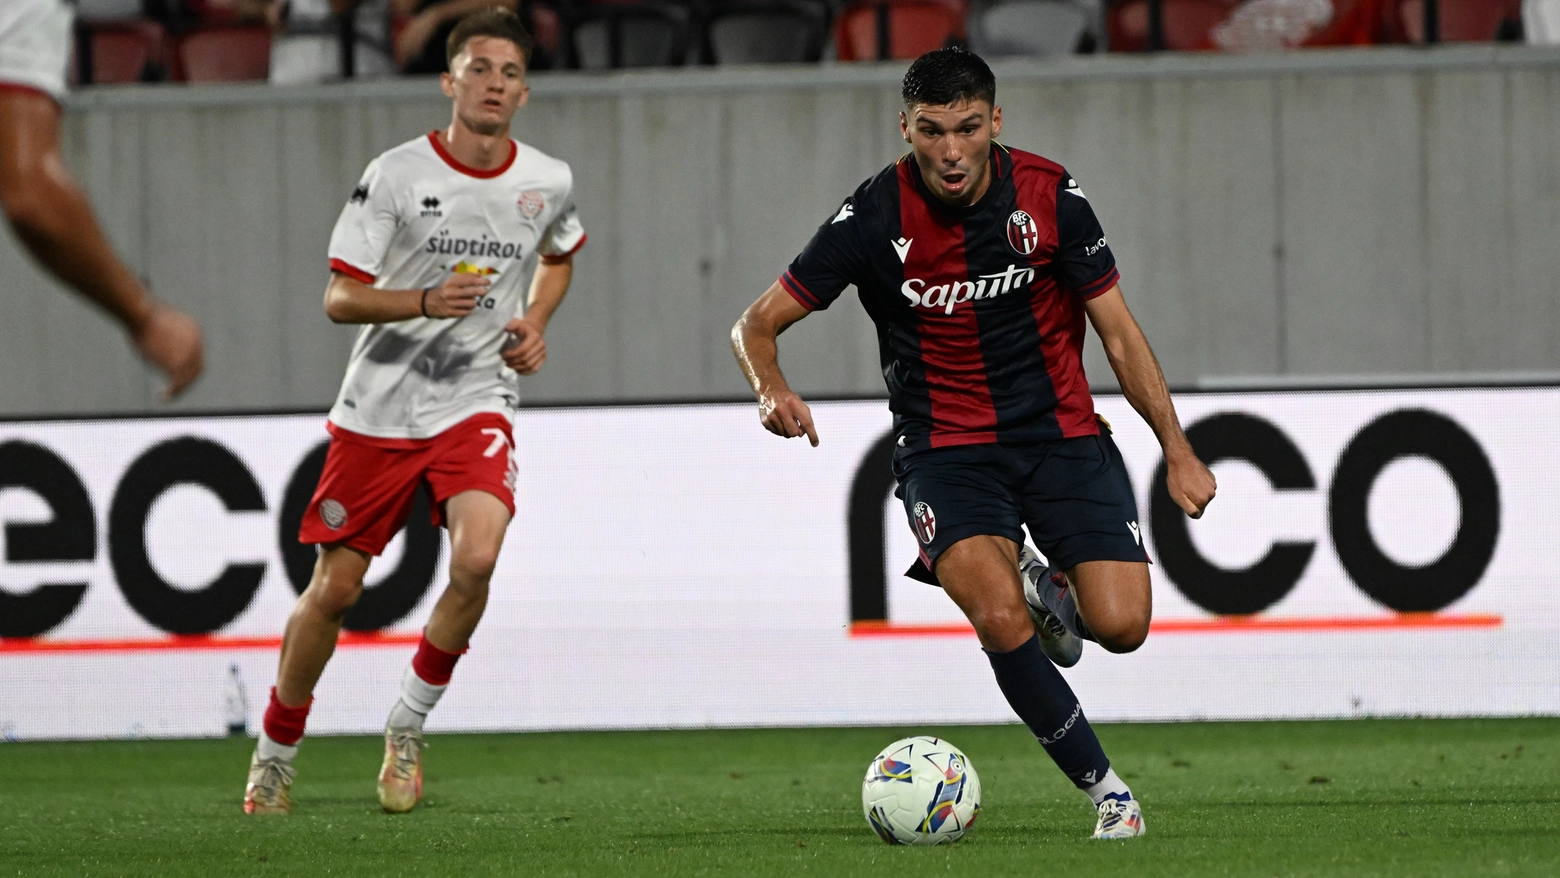 Nicolò Cambiaghi in azione nel match vinto per 1-0 contro il Sudtirol